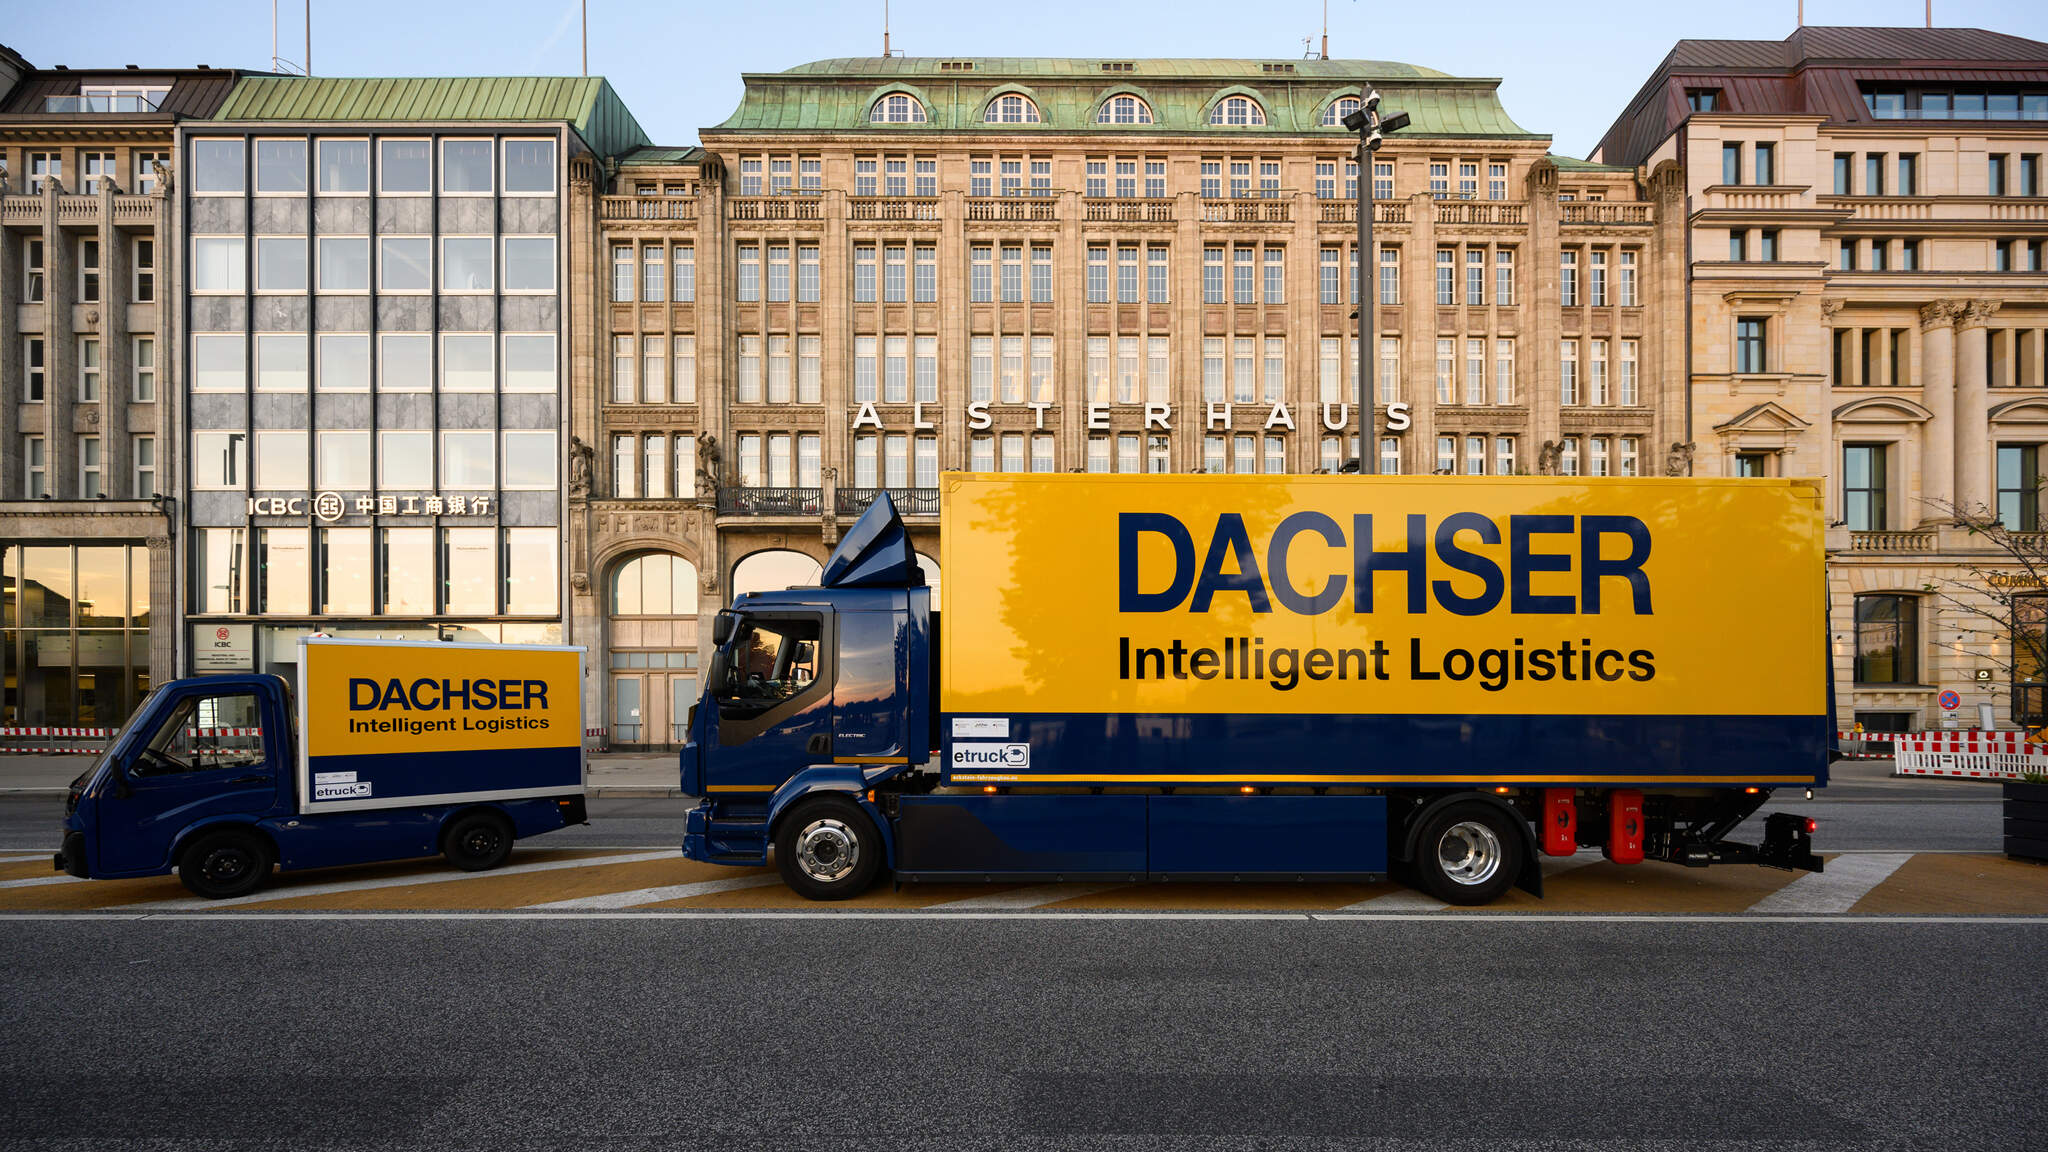 Le concept de logistique urbaine DACHSER Emission-Free Delivery utilise des camionnettes et camions électriques